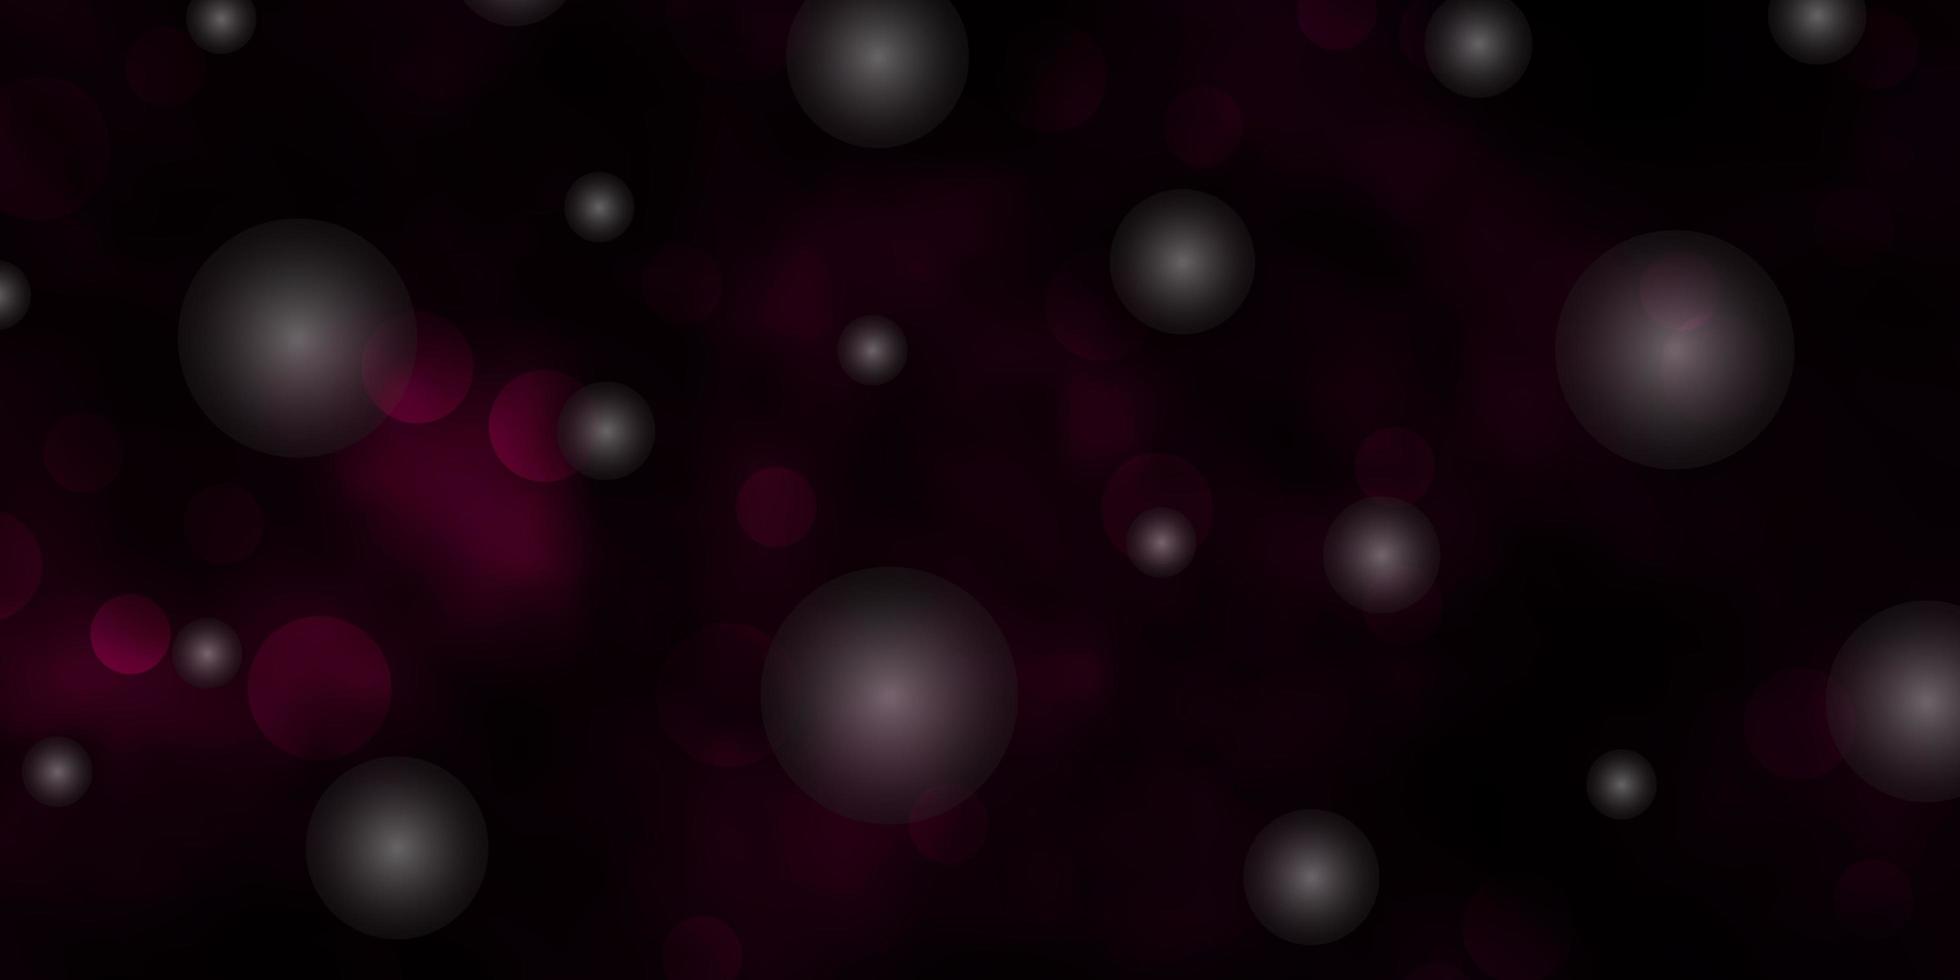 sfondo vettoriale rosa scuro, blu con cerchi, stelle.